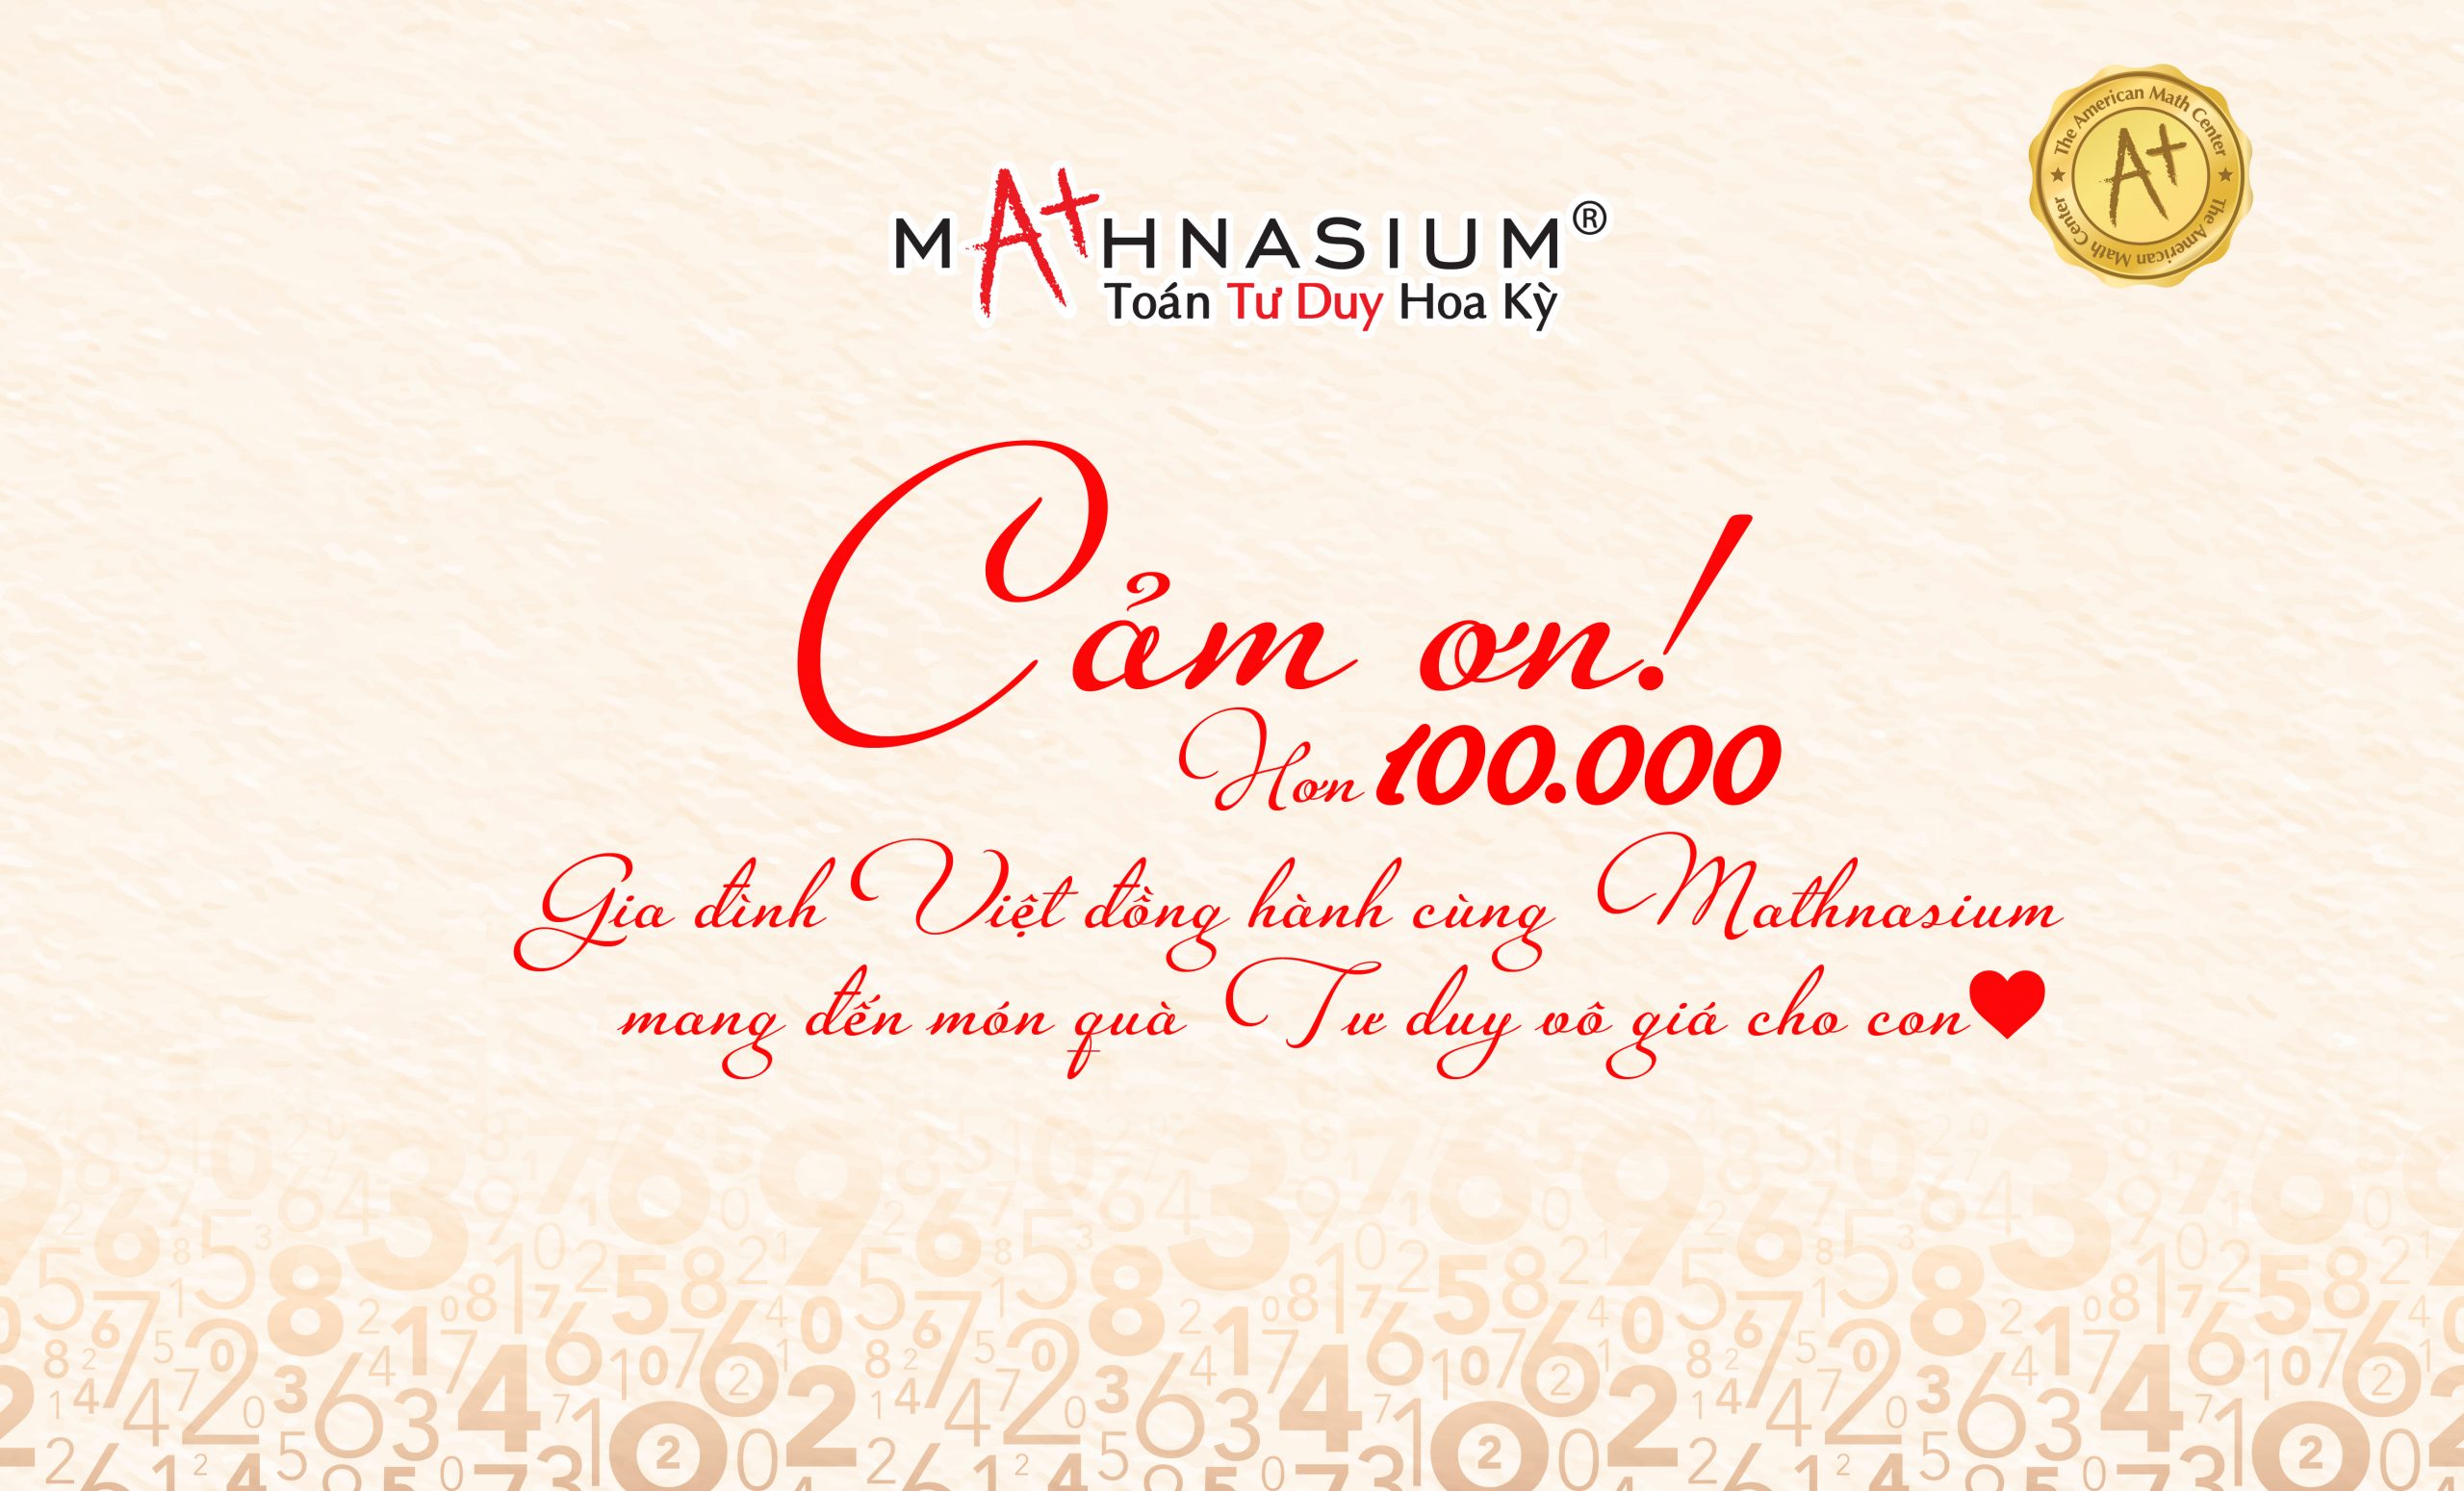 Mathnasium Việt Nam tri ân 100.000 gia đình Việt